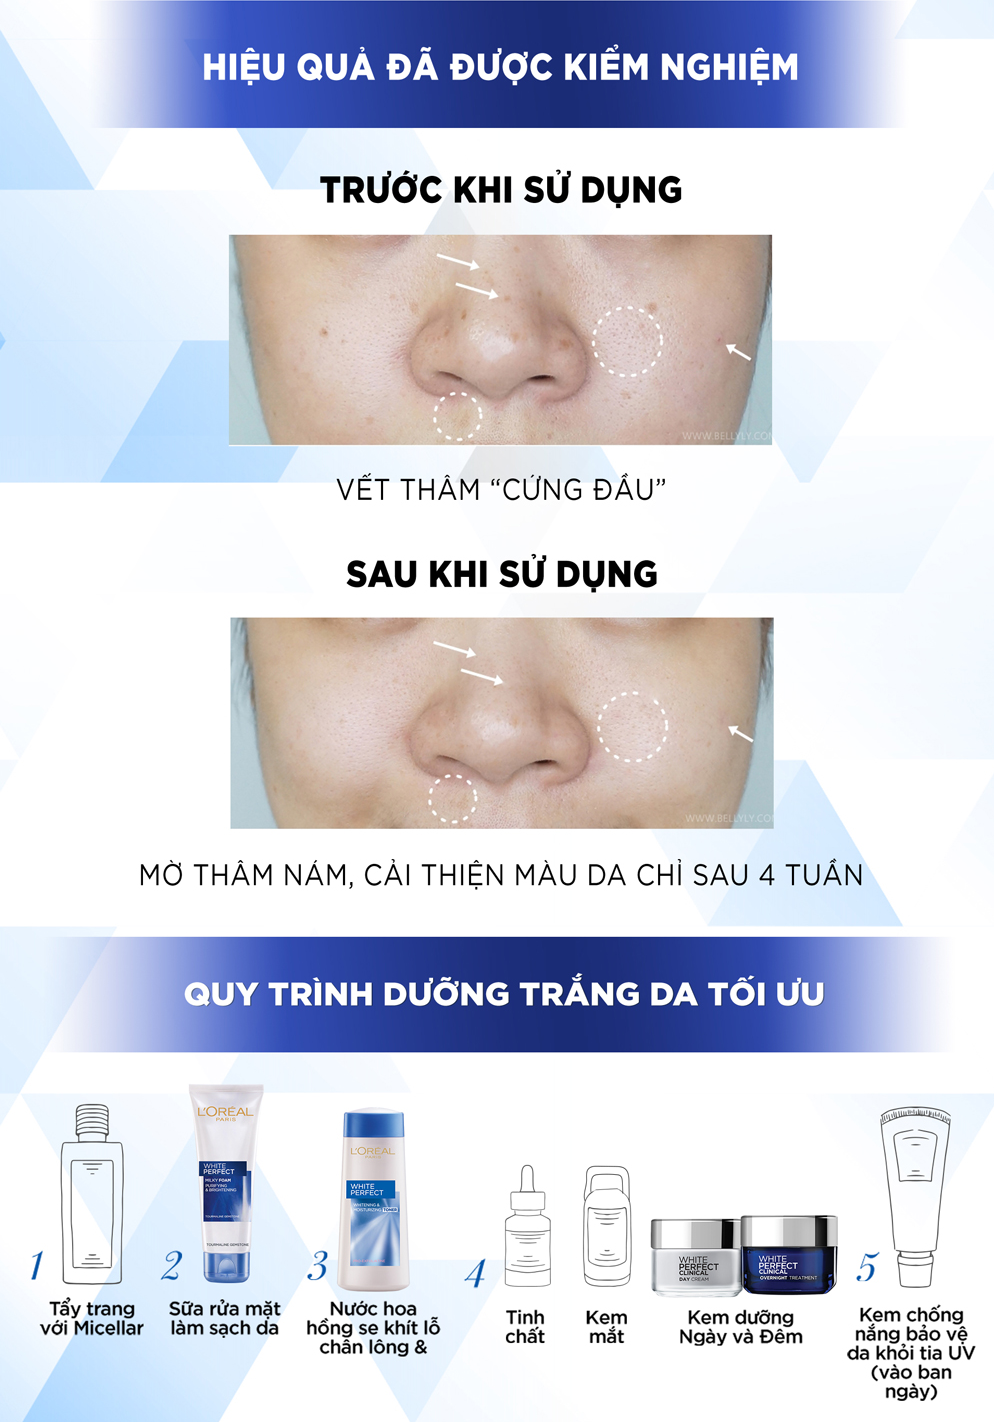 Kem Dưỡng Da Trắng Mịn, Giảm Thâm Nám Ban Đêm L'Oréal White/Aura Perfect Clinical Overnight (50ml) 